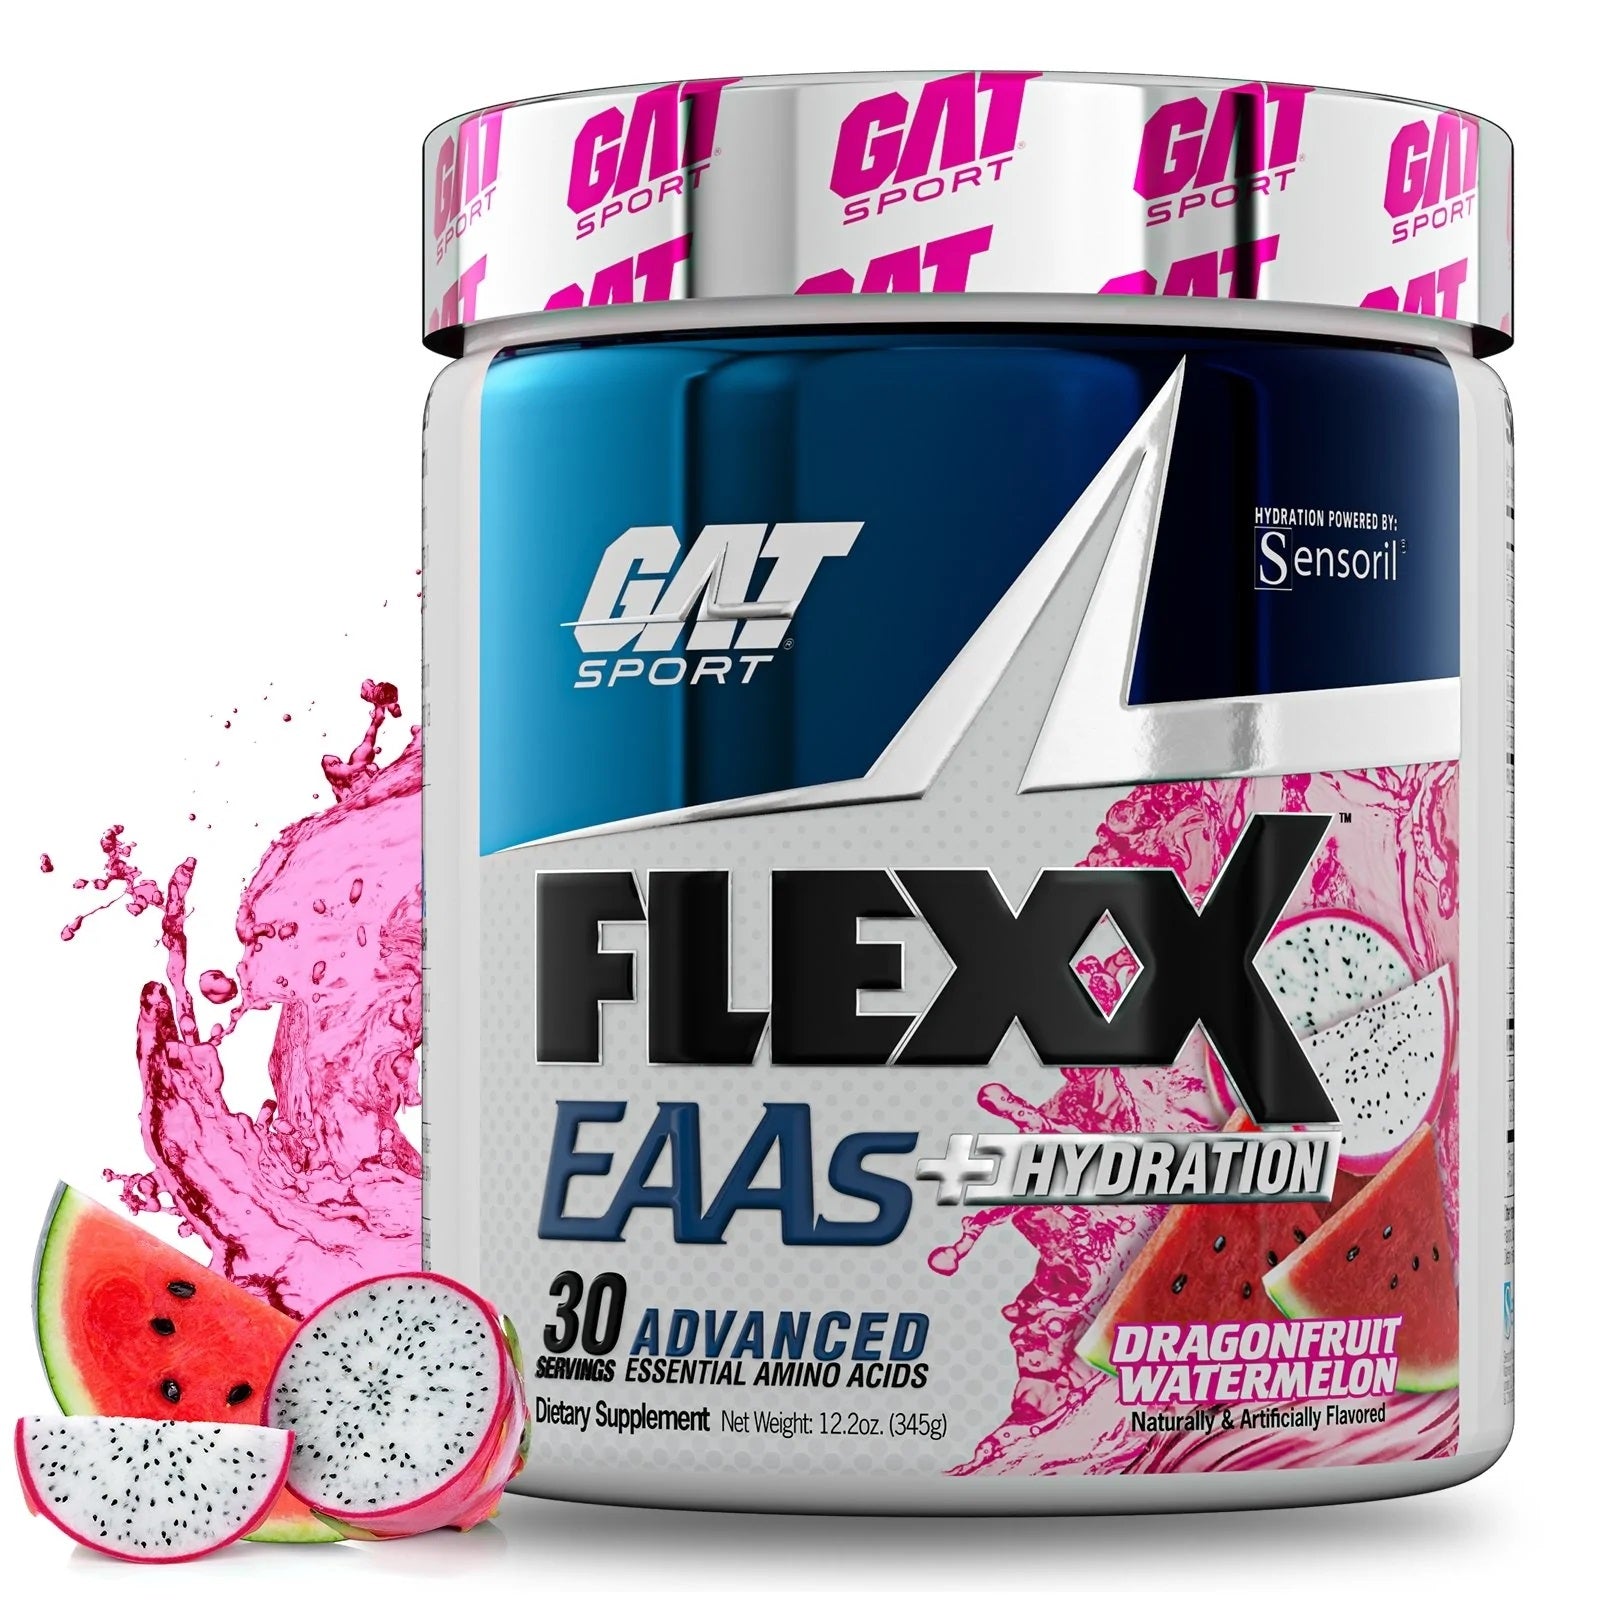 GAT Sport FLEXX EAAs plus Hydration muscle pumps